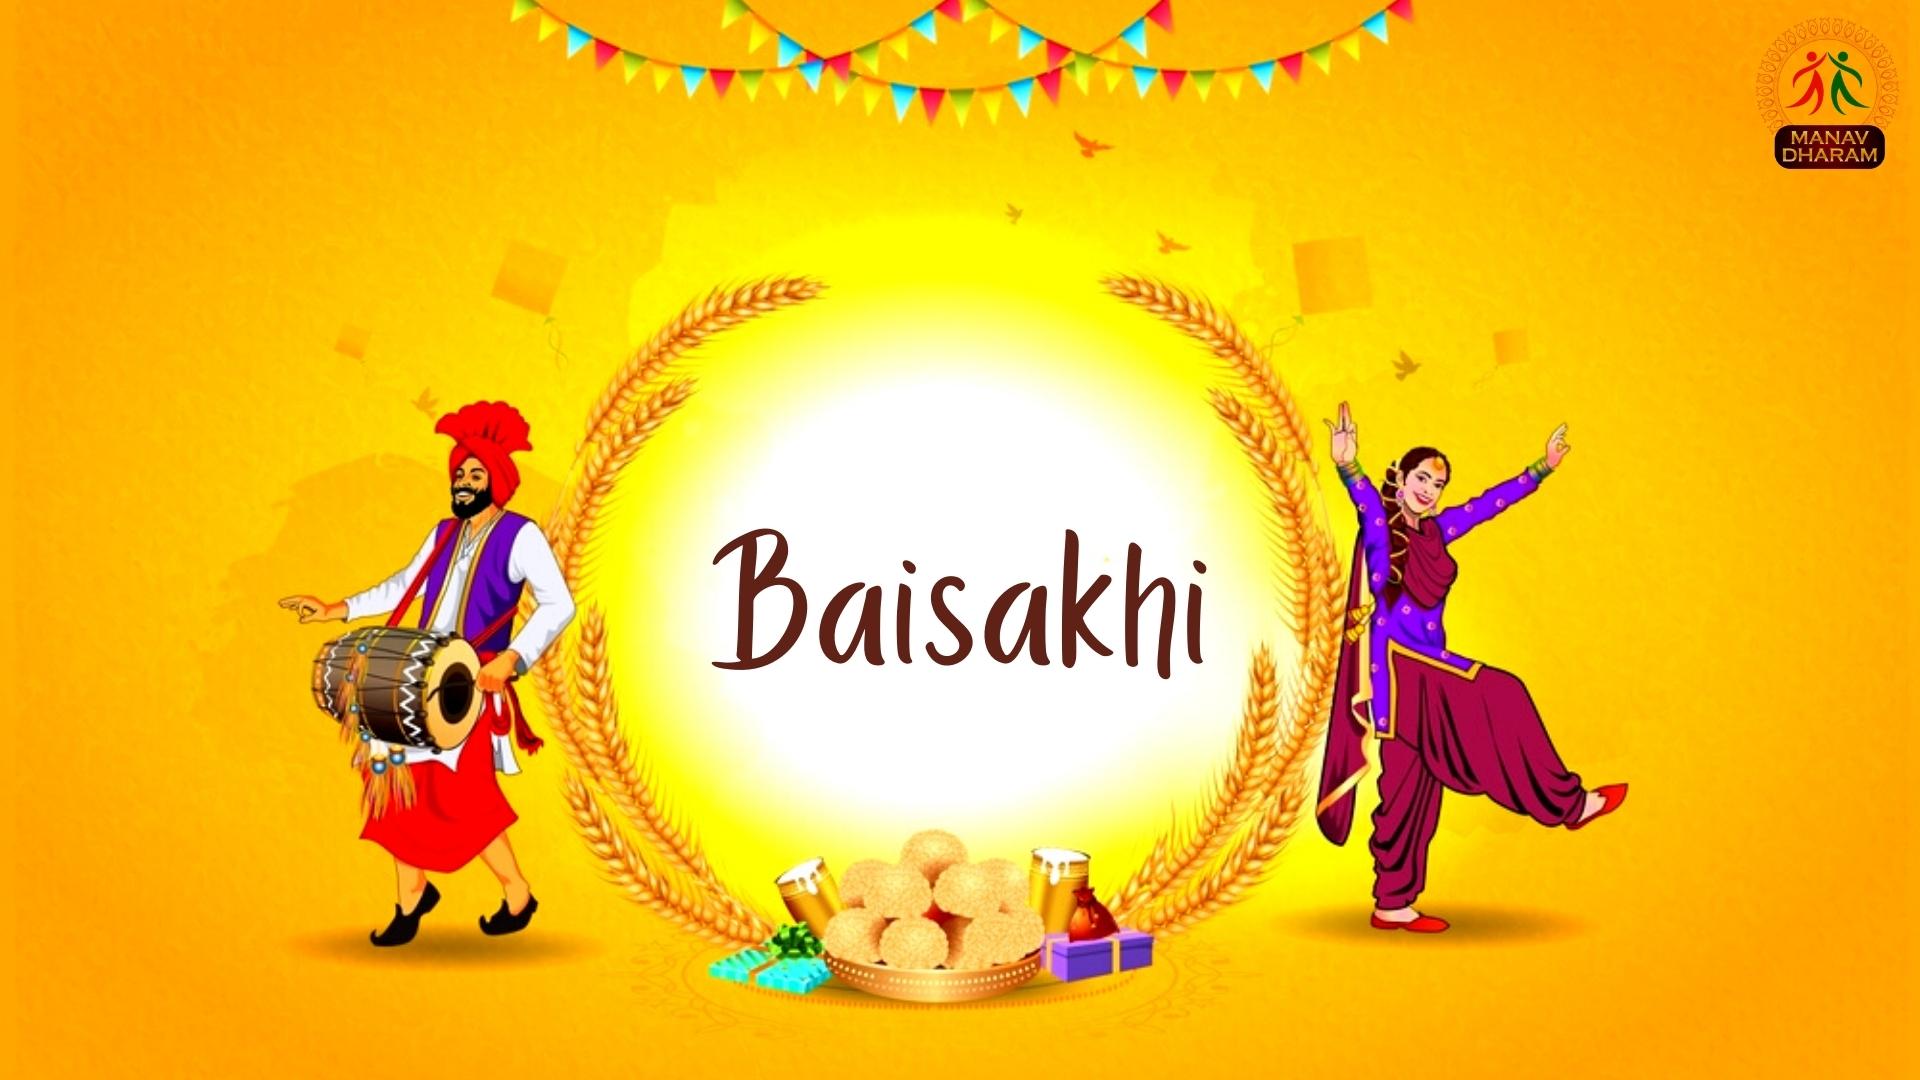 Baisakhi – Manavdharam